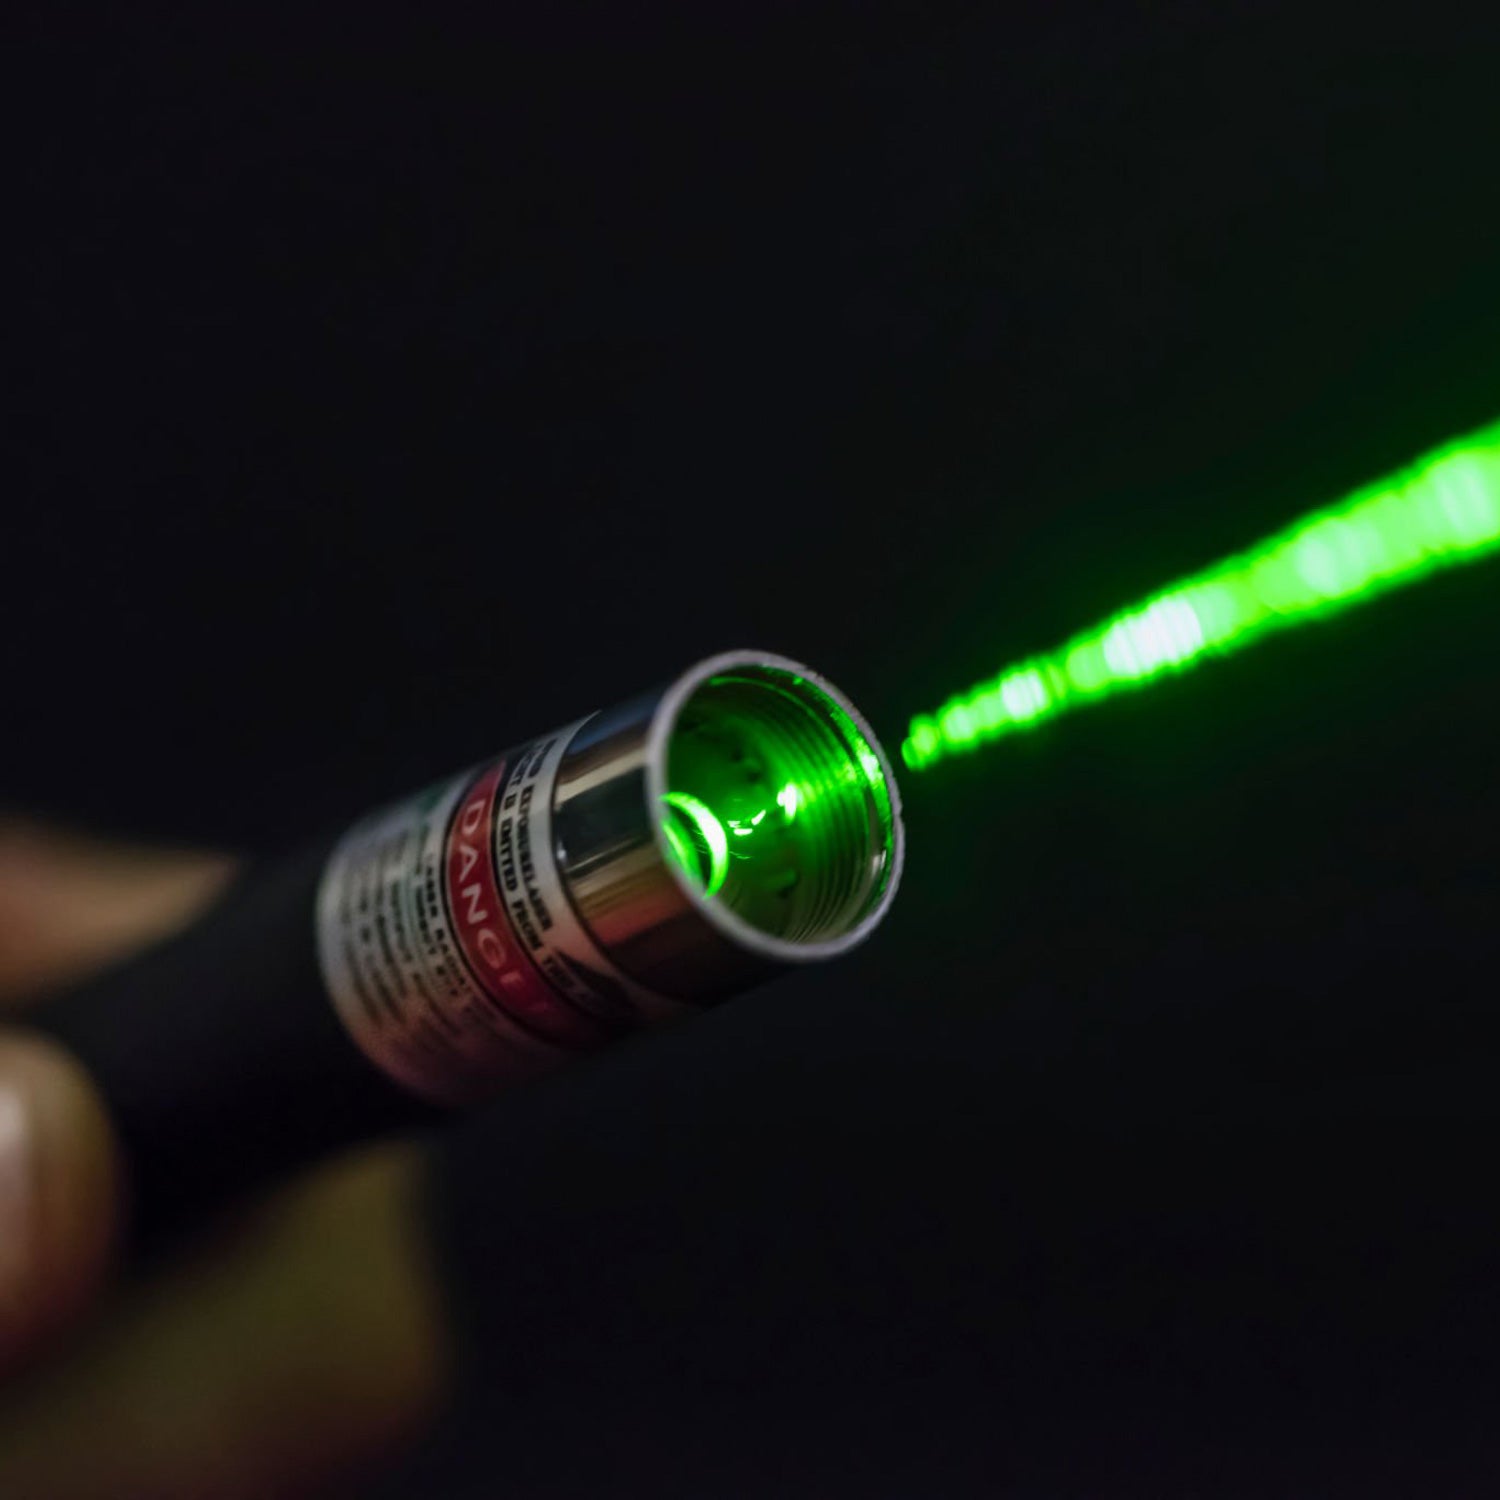 Dangerous laser pointer